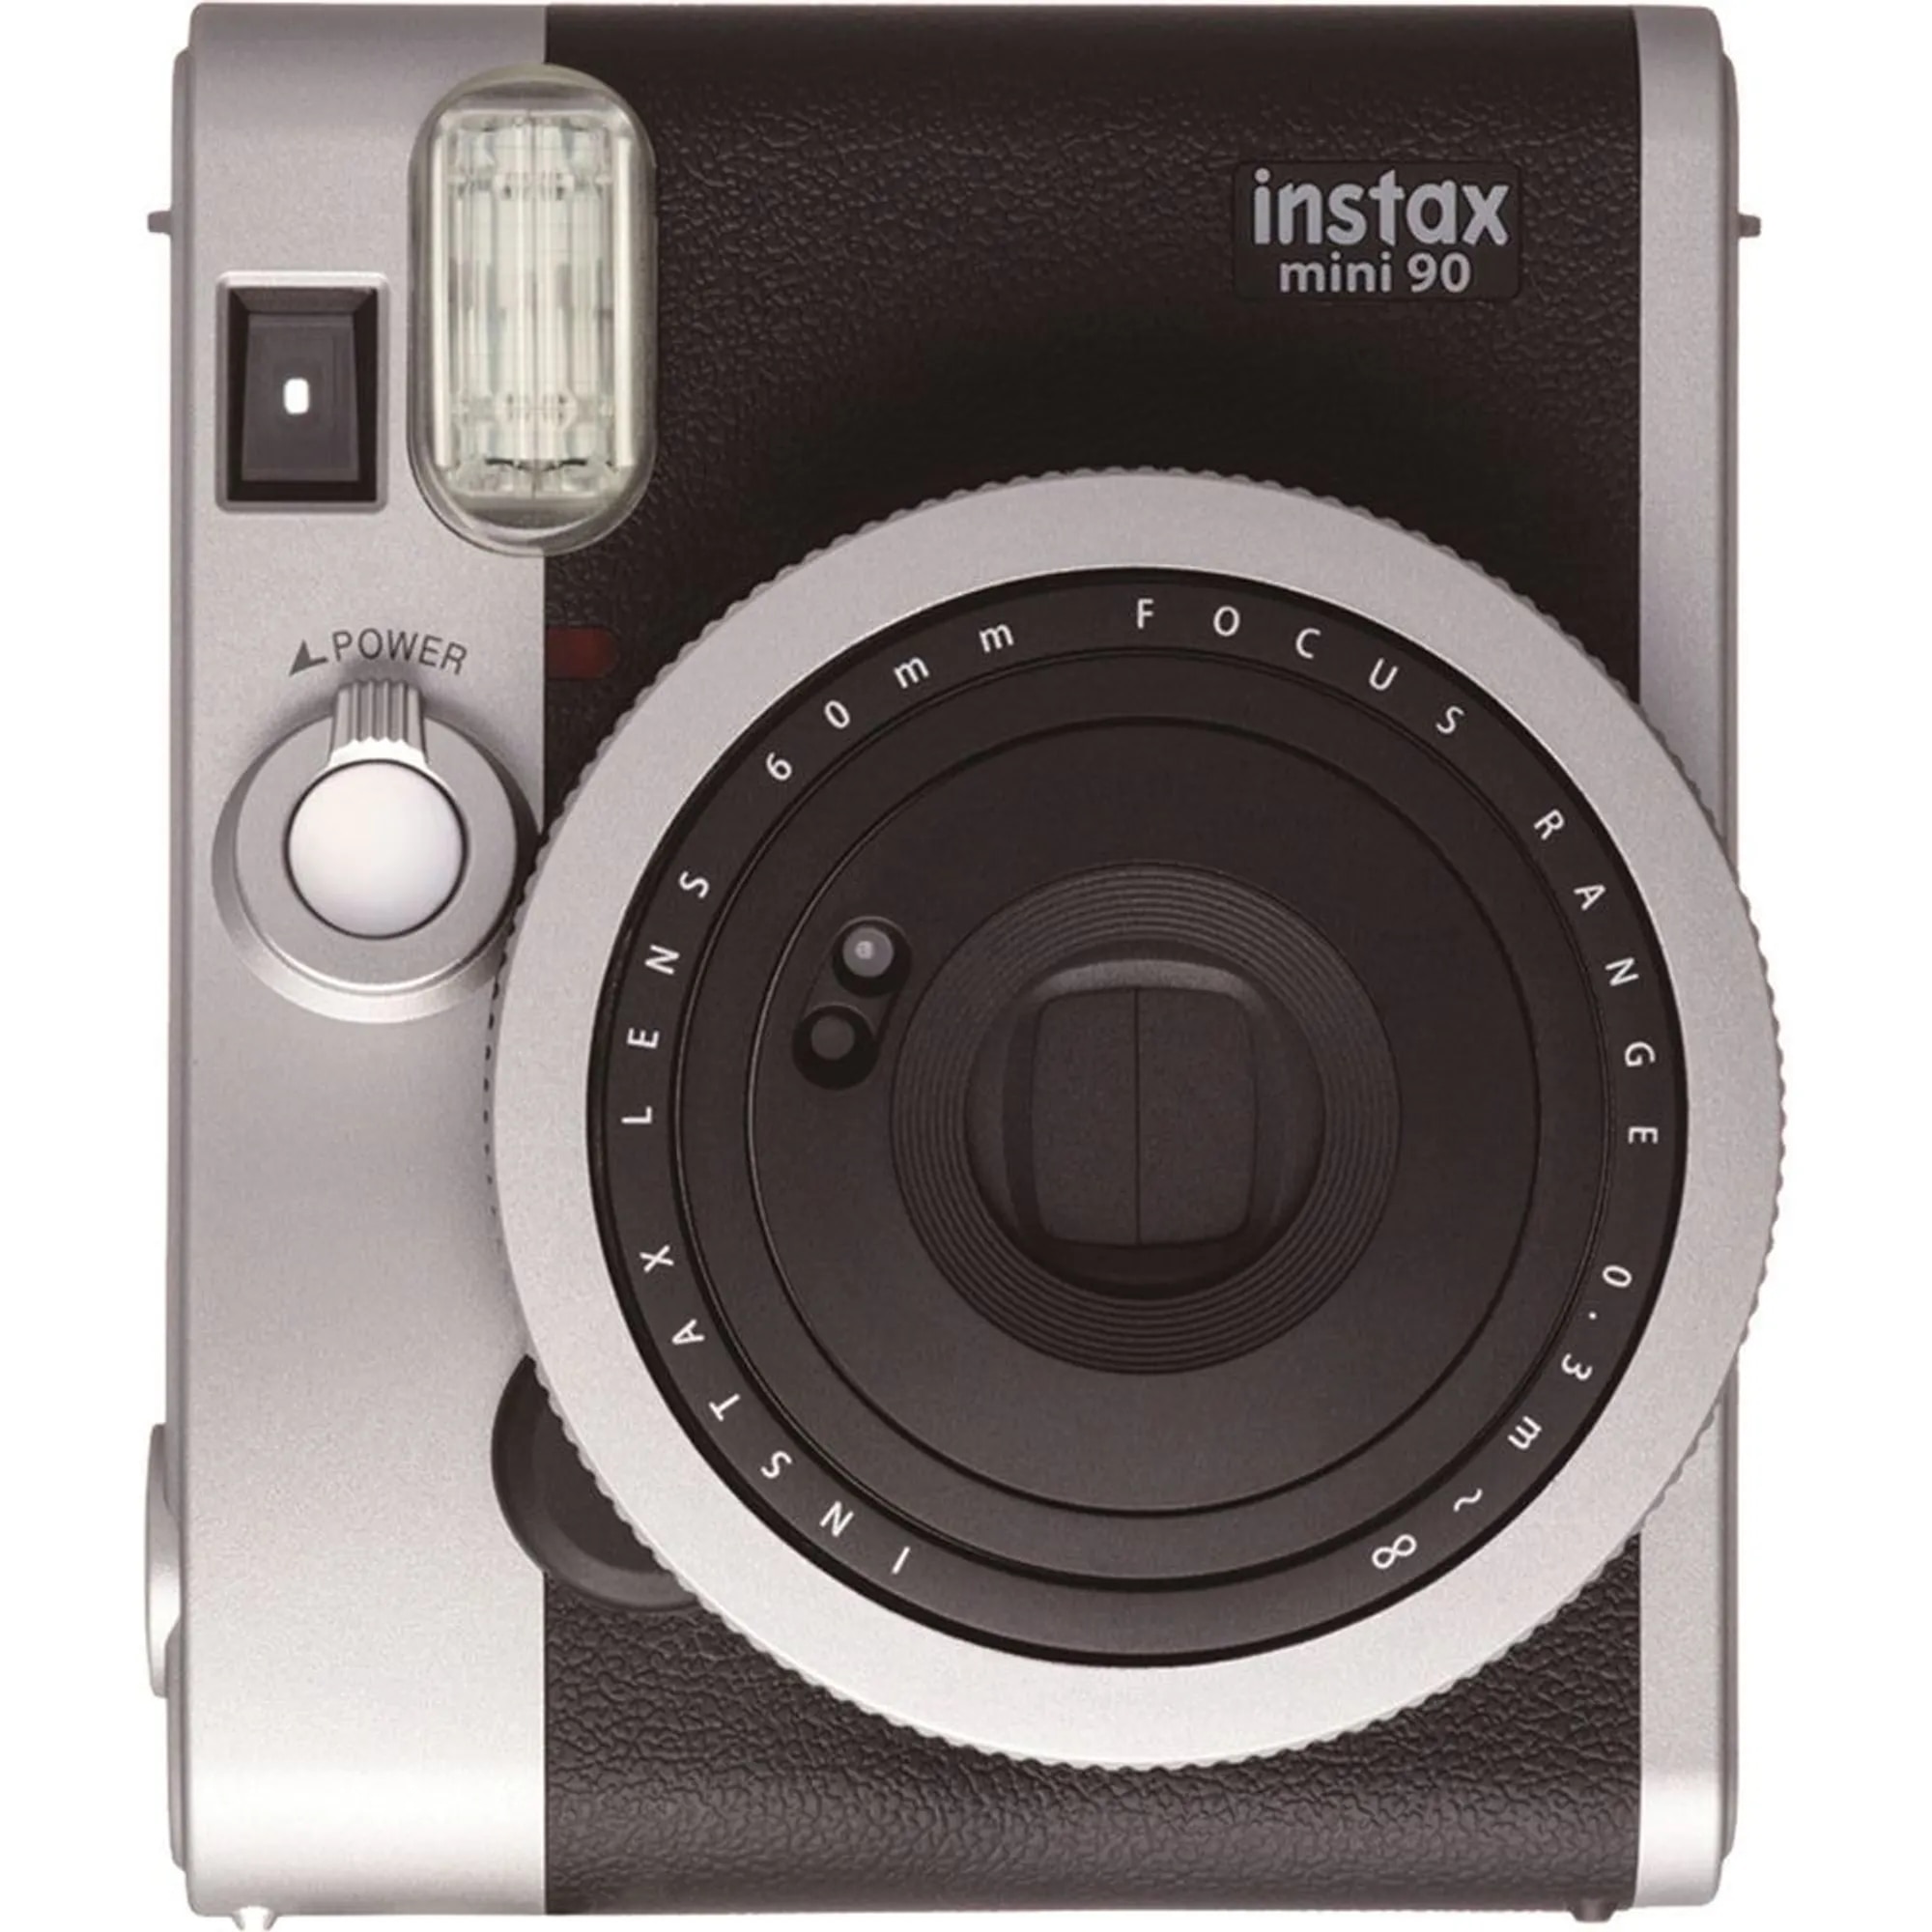 Camera instant Fujifilm Instax mini - eMAG.ro